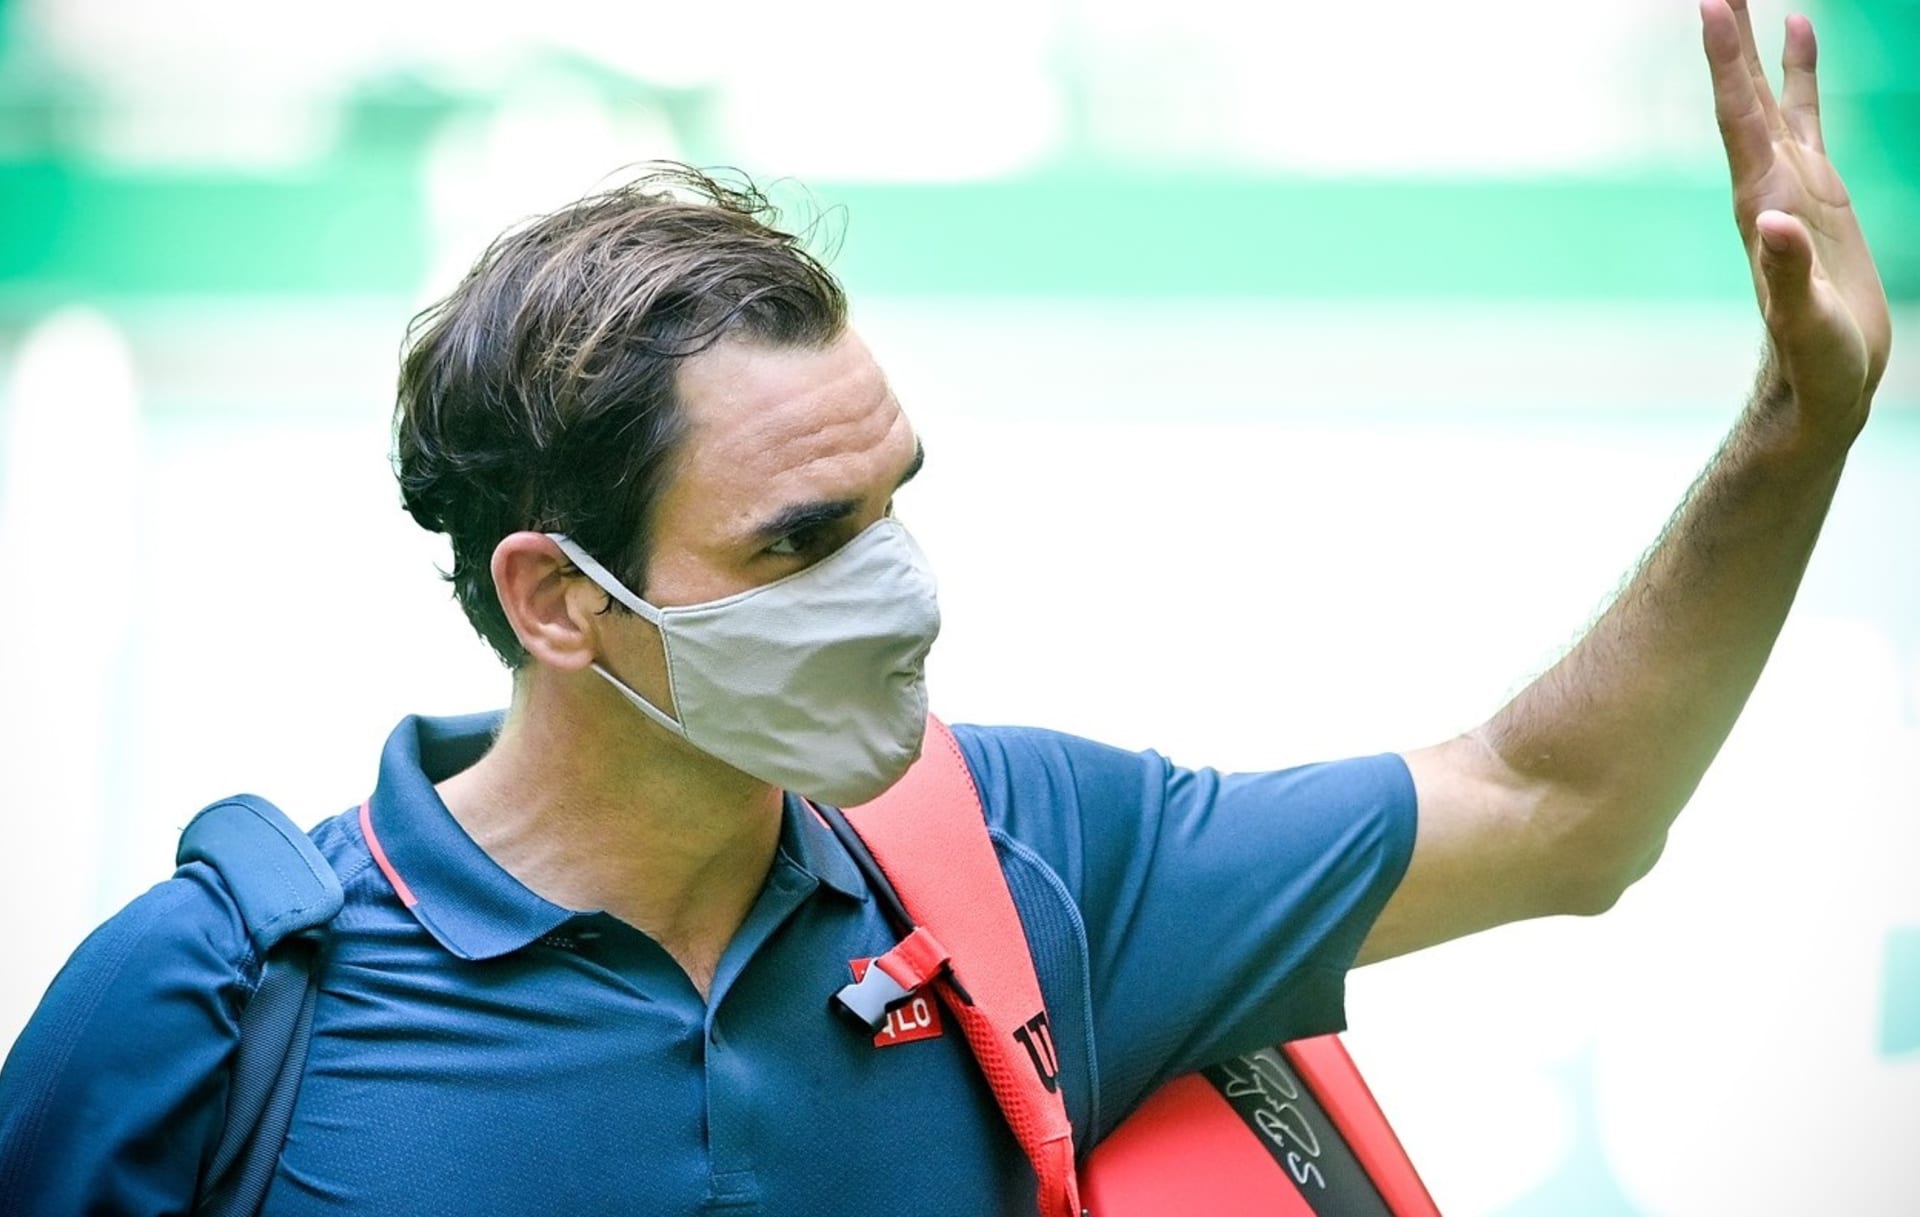 Takto se Federer loučil poté, co překvapivě vypadl v německém Halle už v osmifinále. Rozloučí se brzy i s celou kariérou?